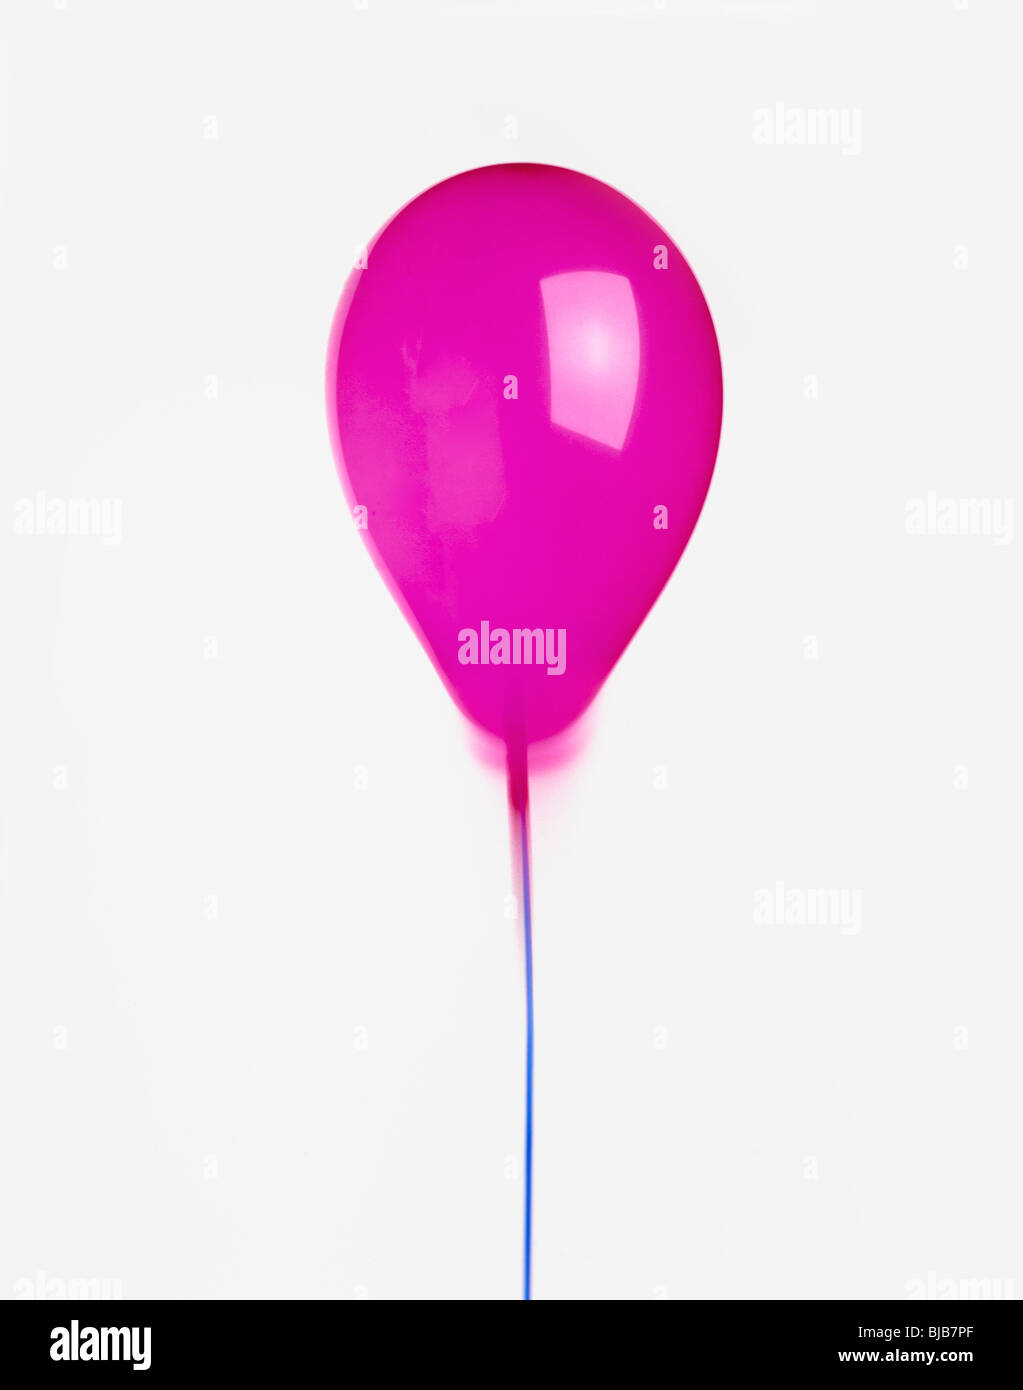 Ballon hélium violet avec coupe-ruban sur fond blanc Banque D'Images